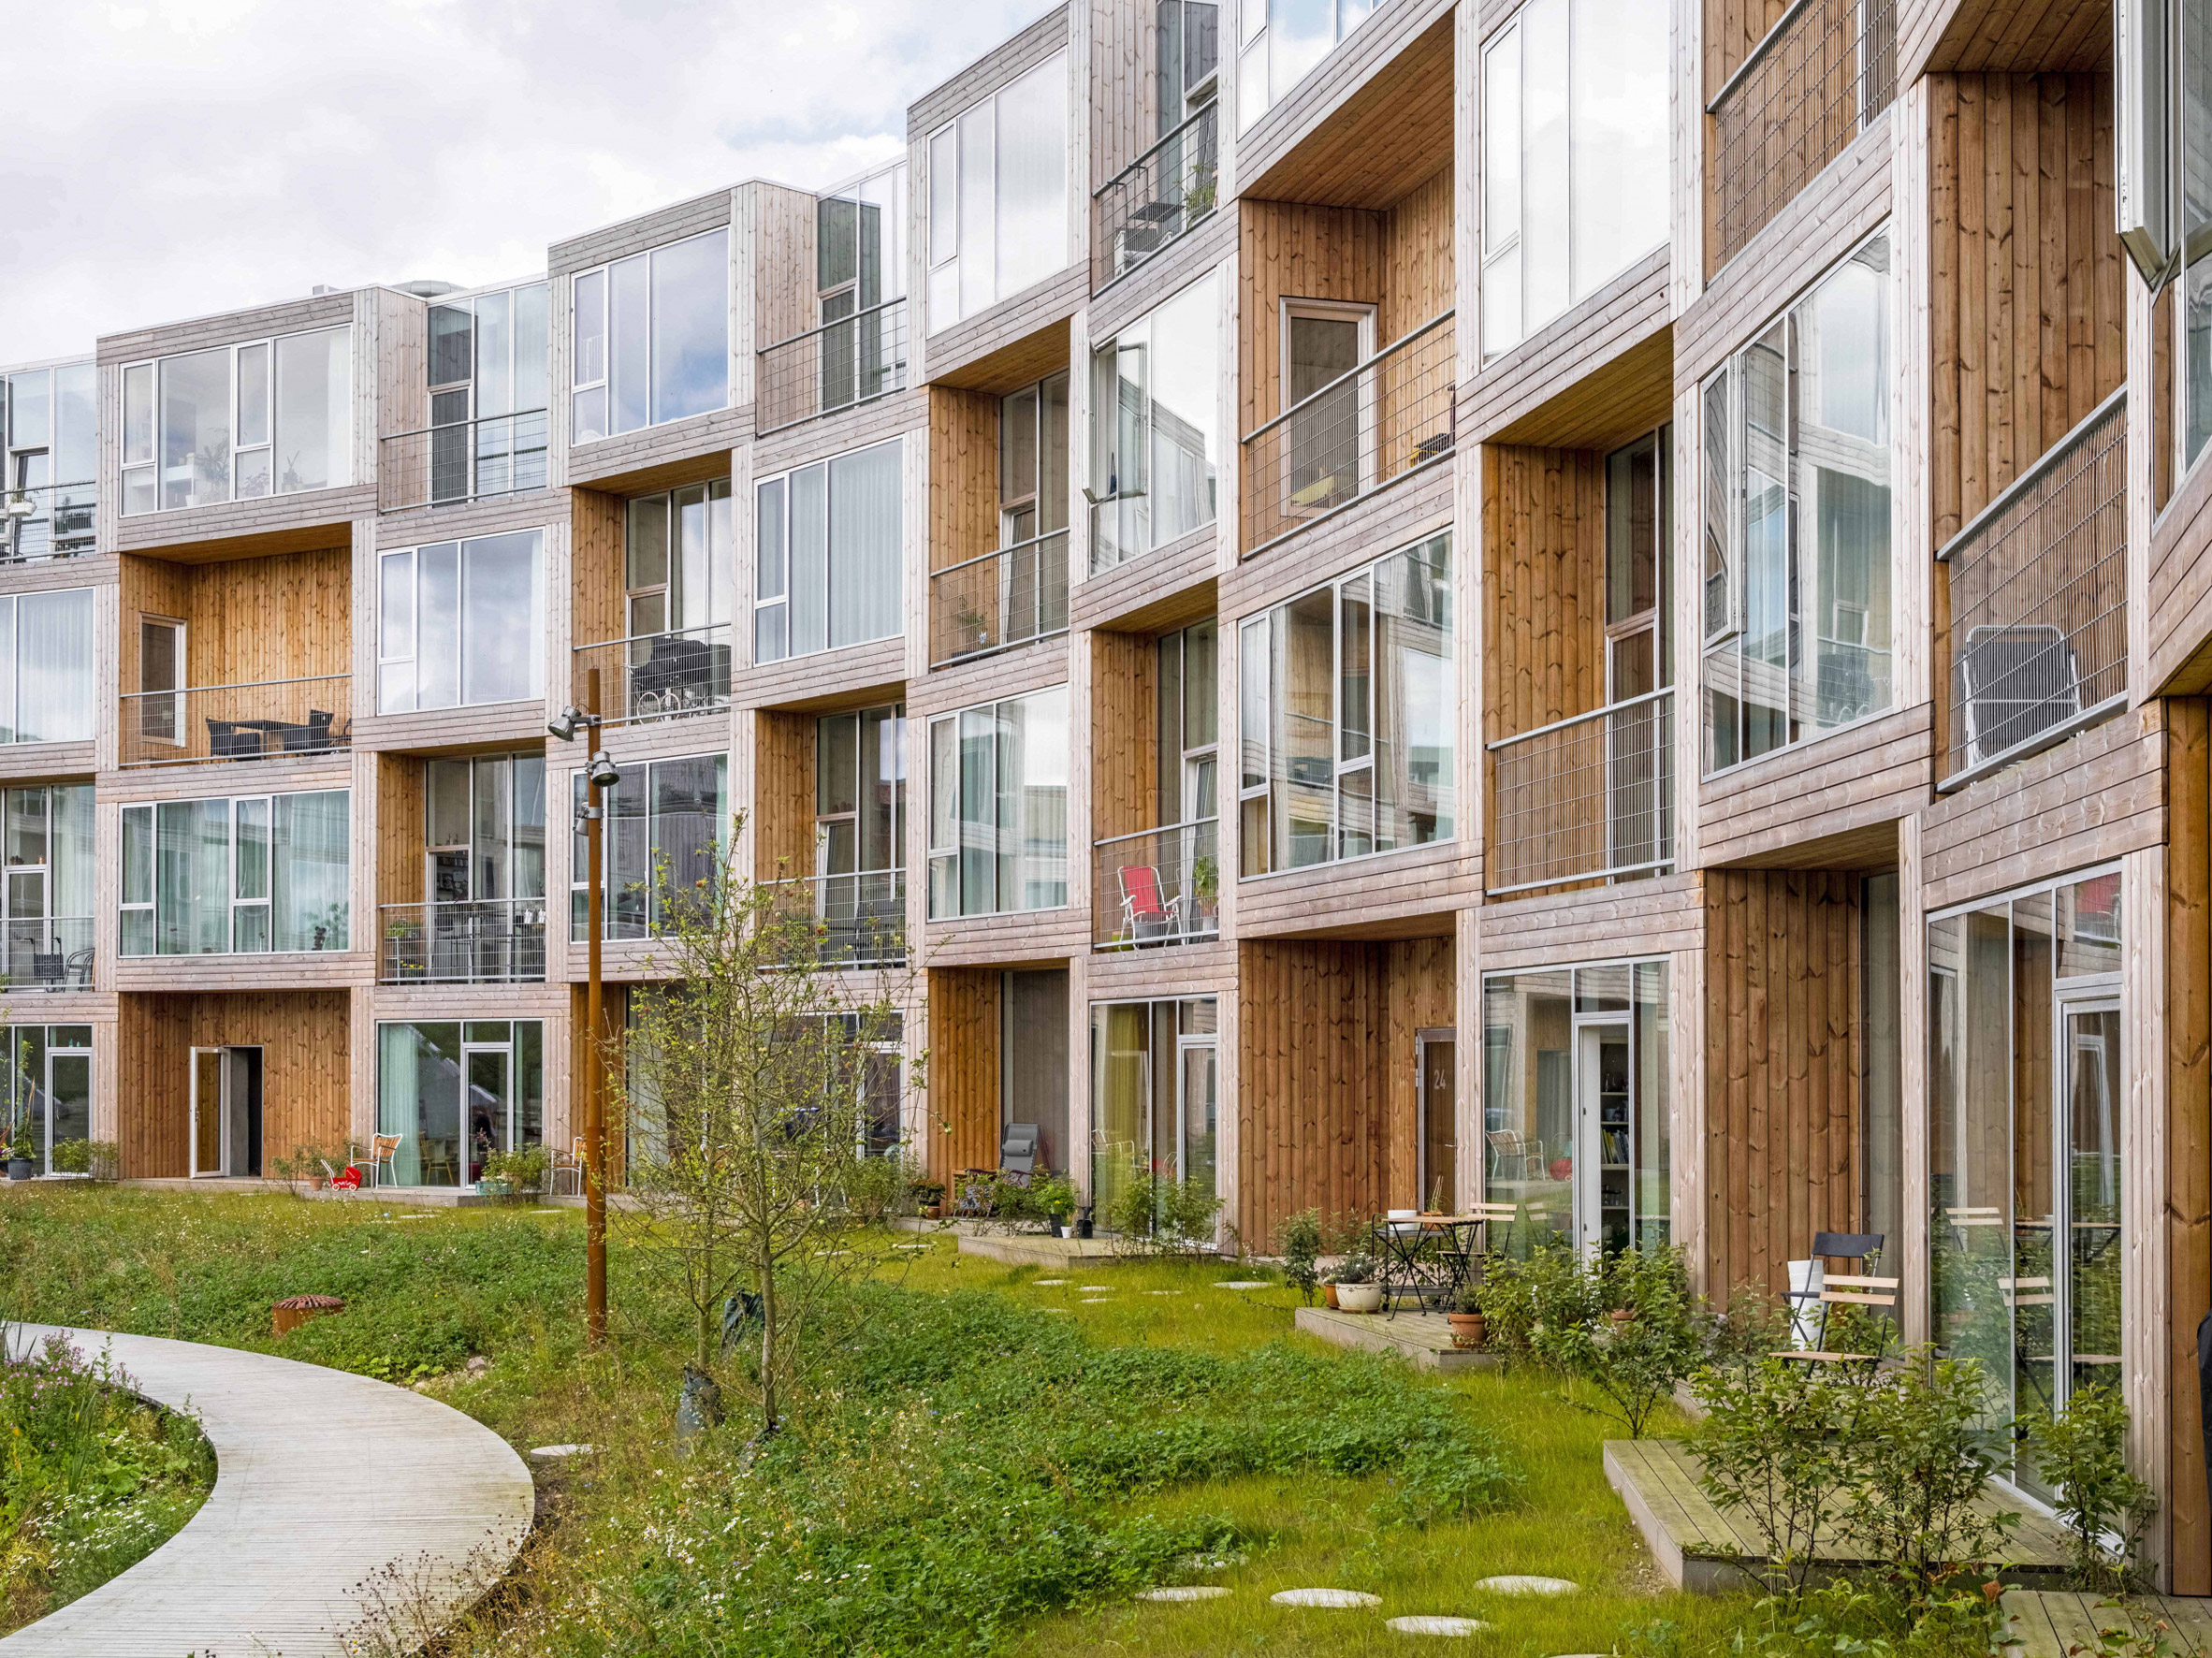 Modular Sneglehusene housing in Denmark by BIG